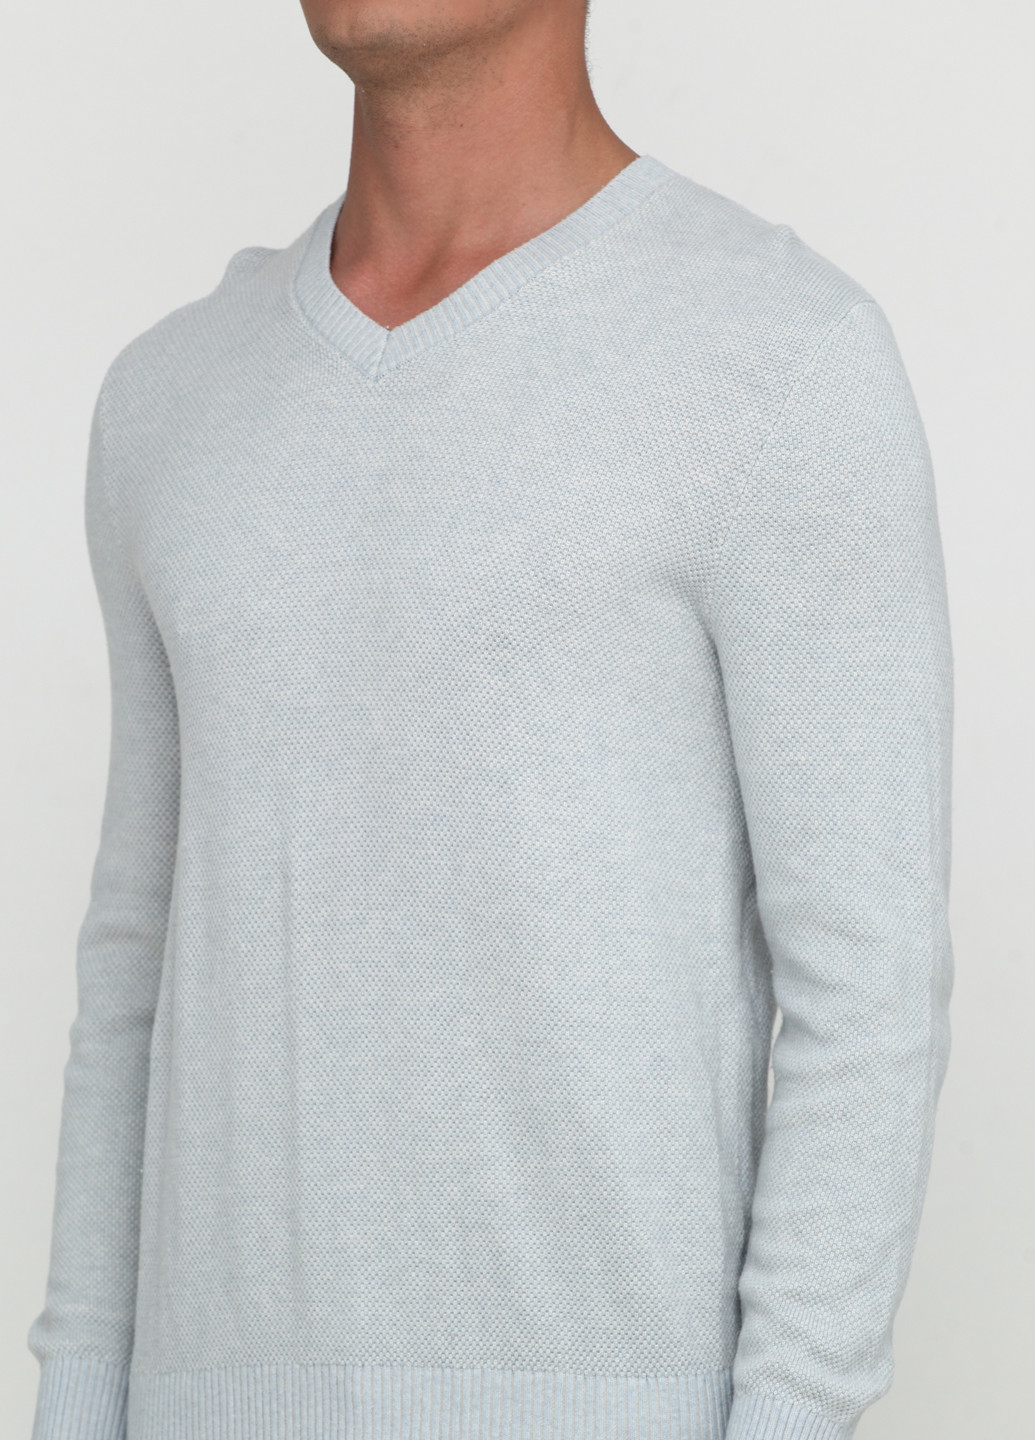 Голубой демисезонный пуловер пуловер Gap